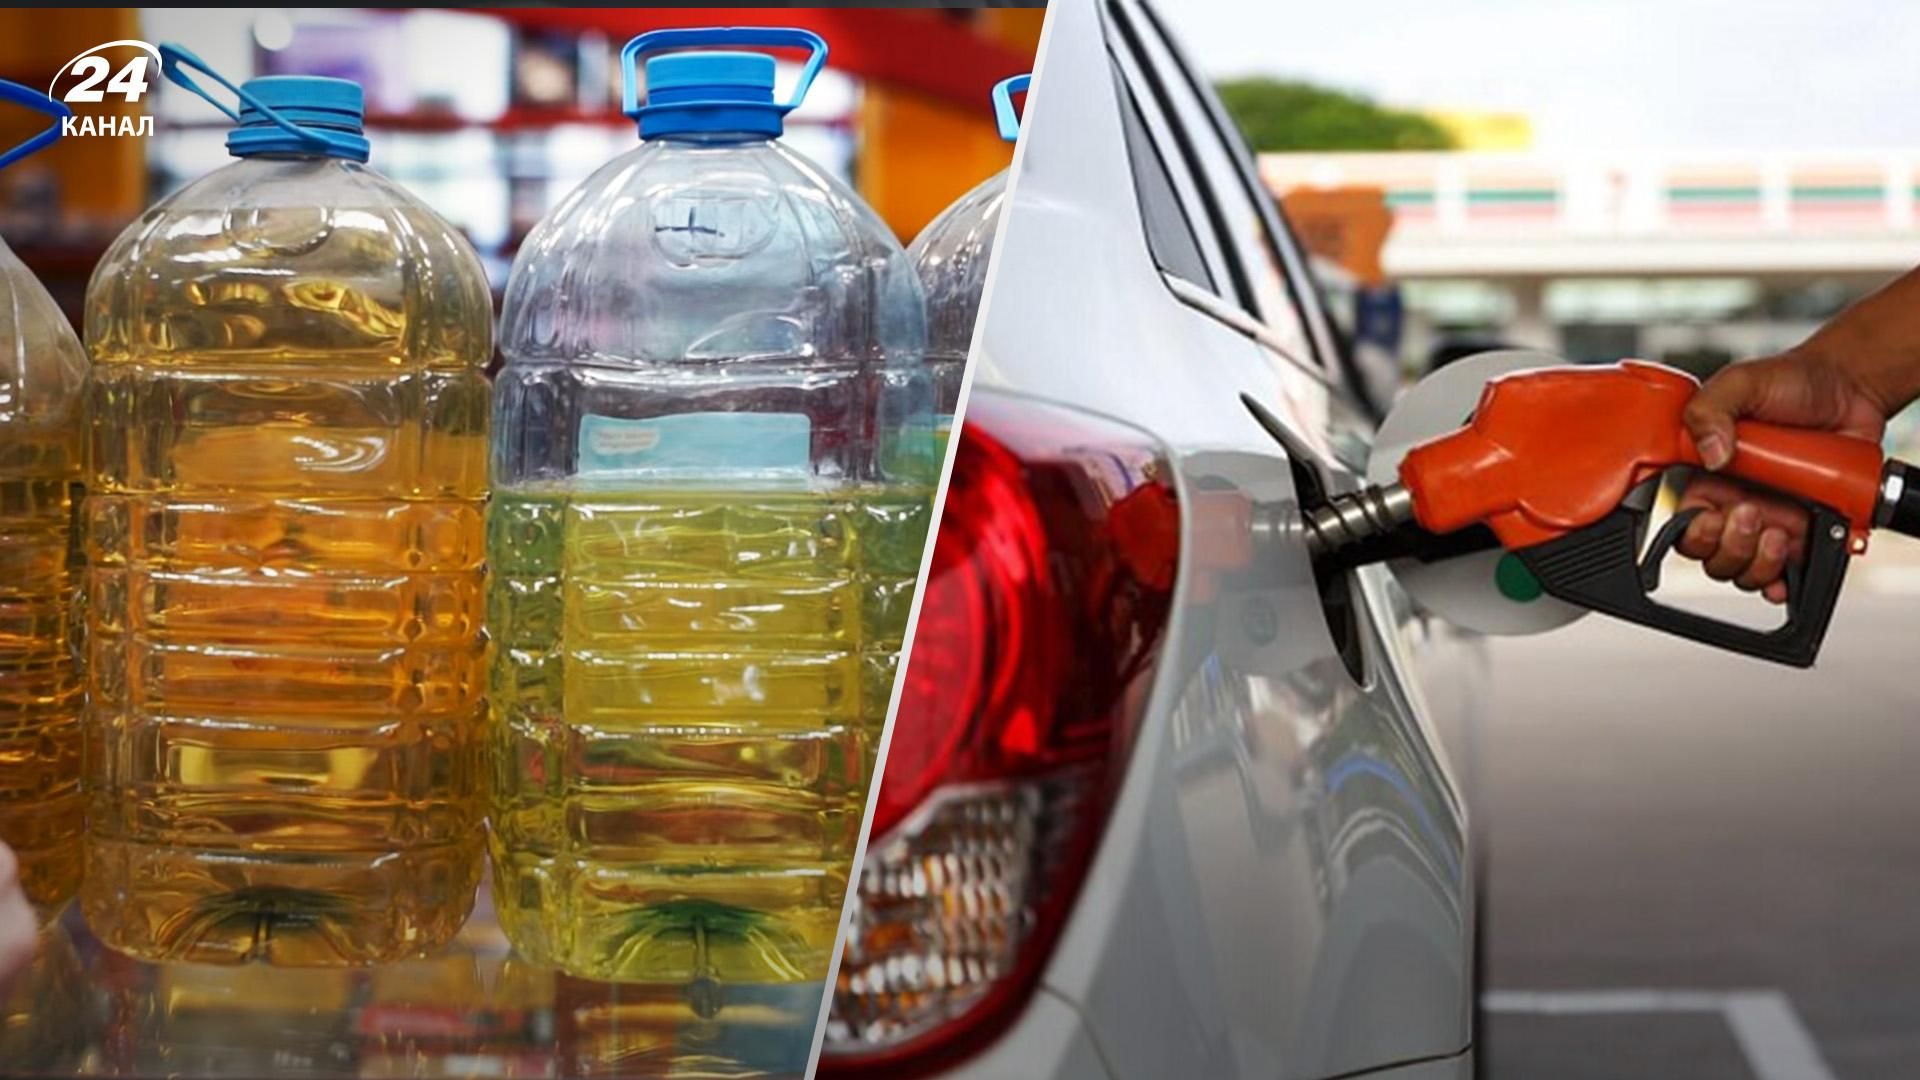 Почему на заправках водителям не разрешают наливать топливо в пластиковую тару